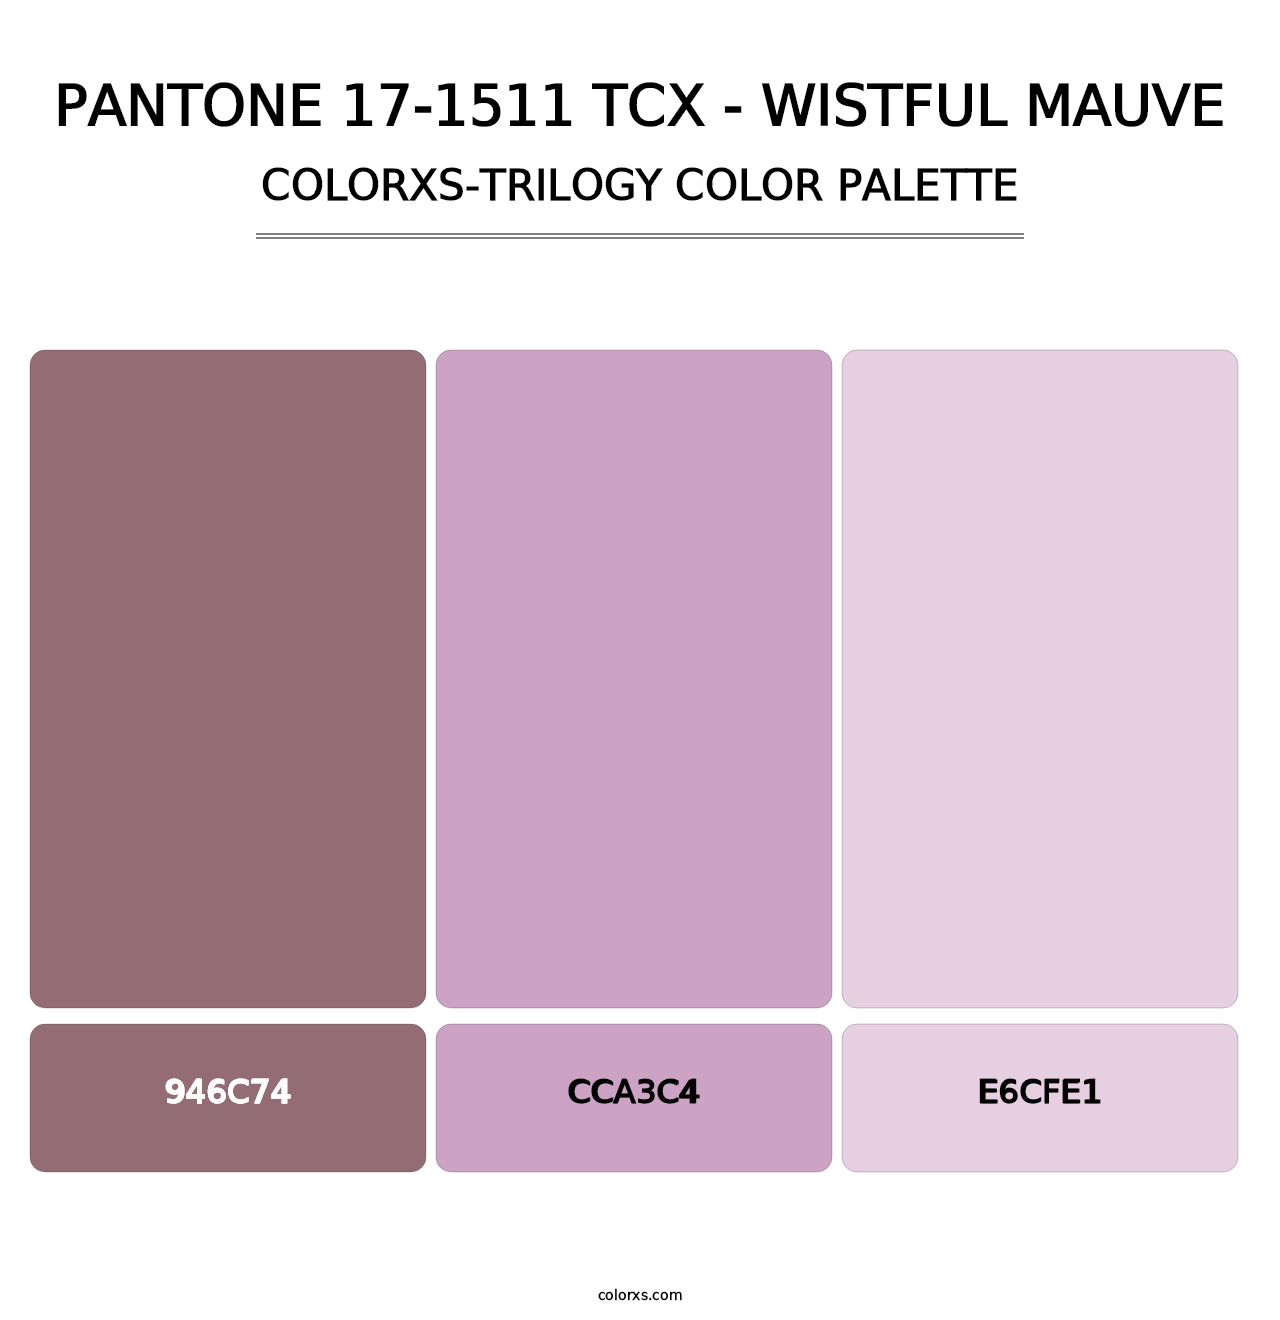 PANTONE 17-1511 TCX - Wistful Mauve - Colorxs Trilogy Palette